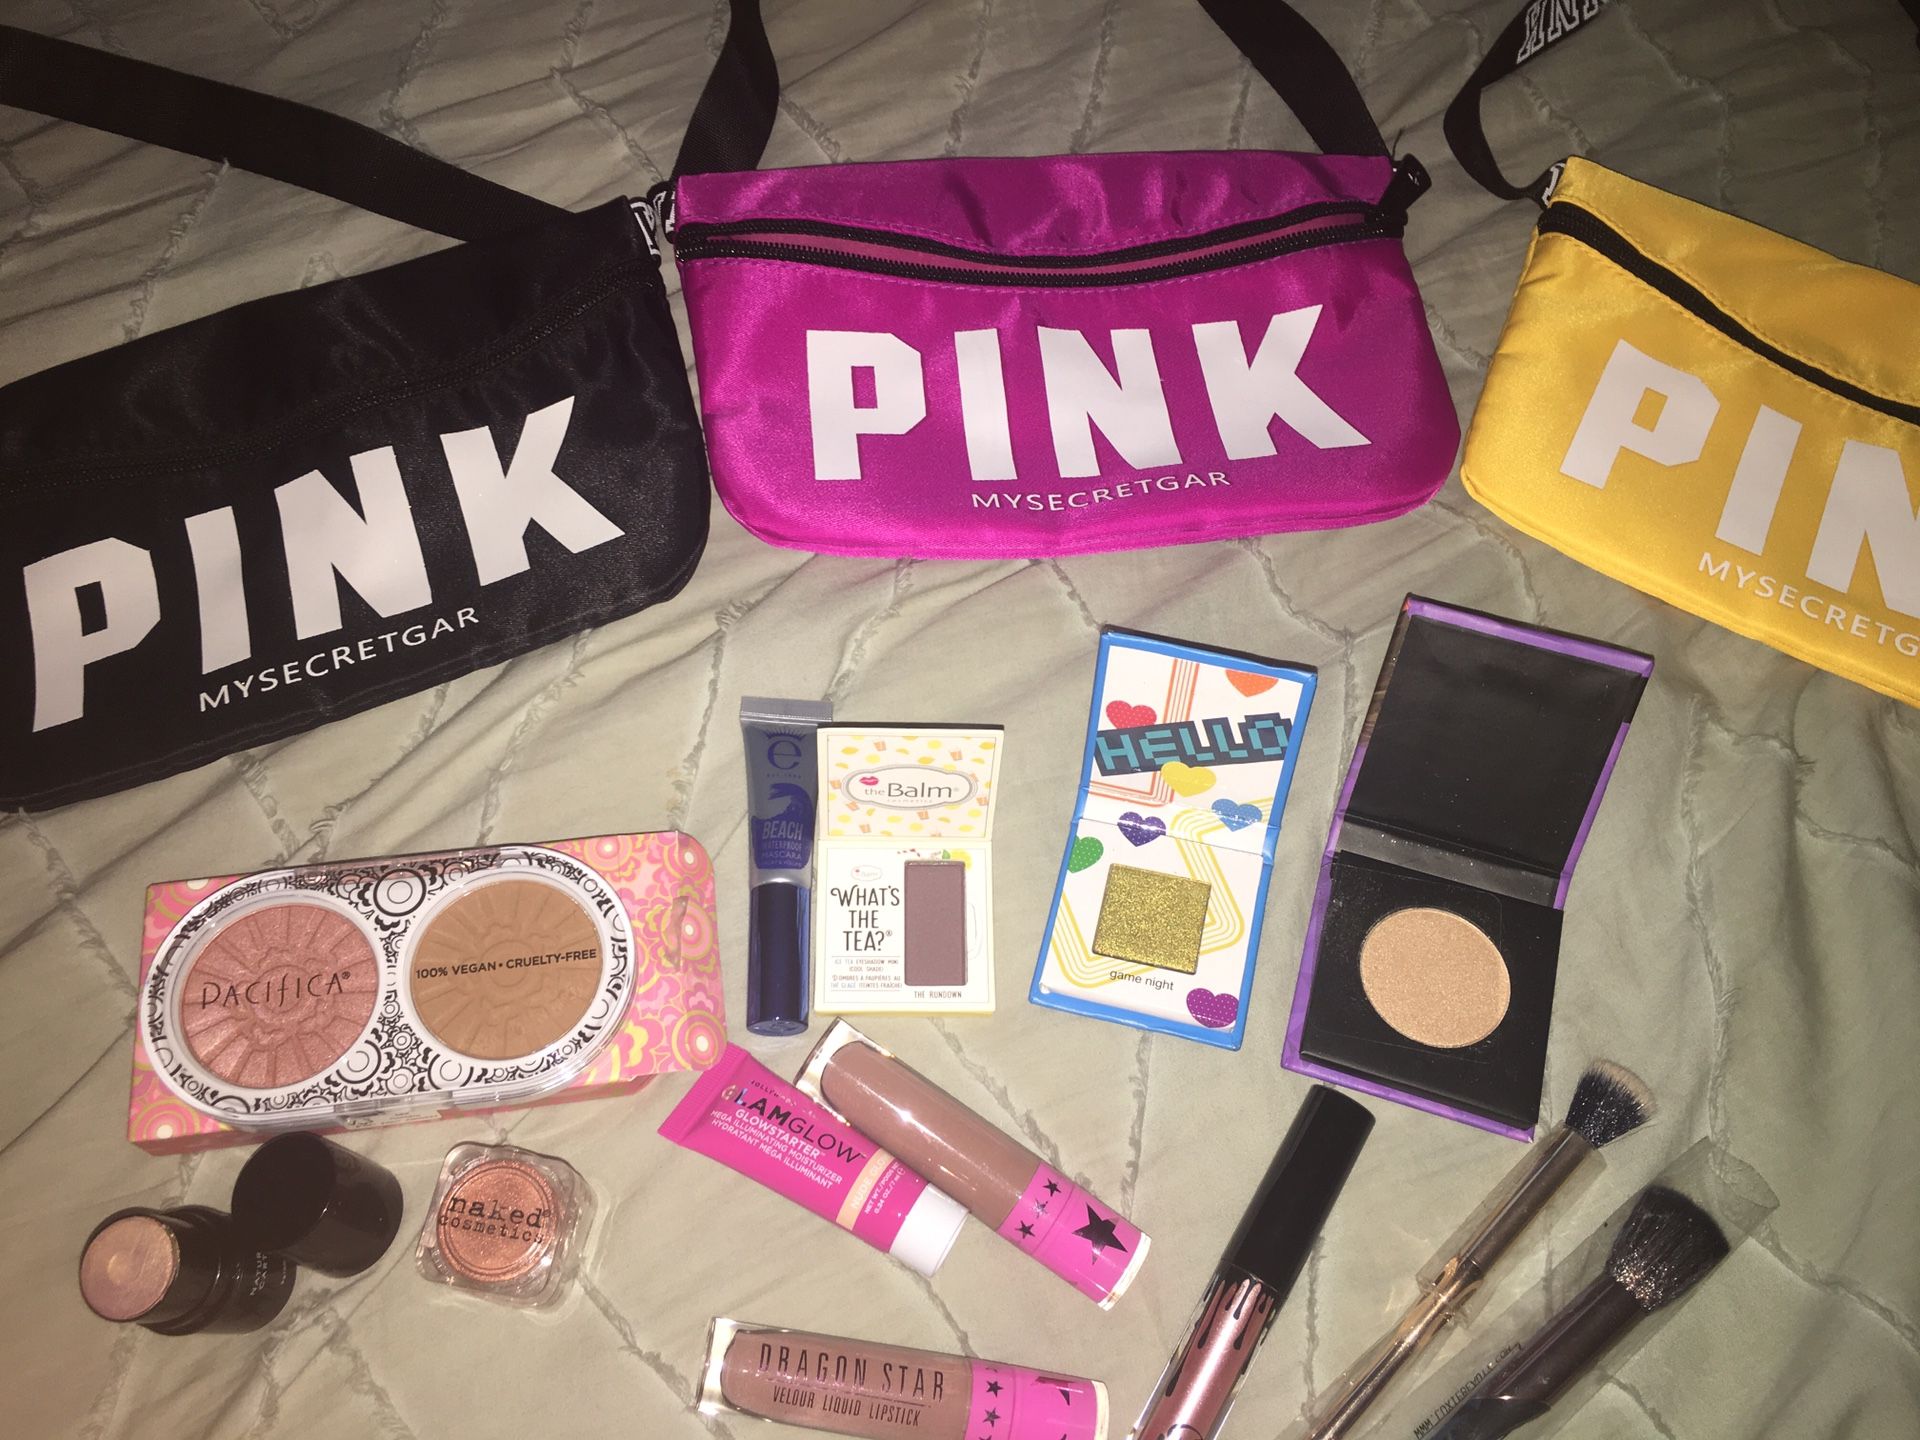 Fanny pink bag new and makeup